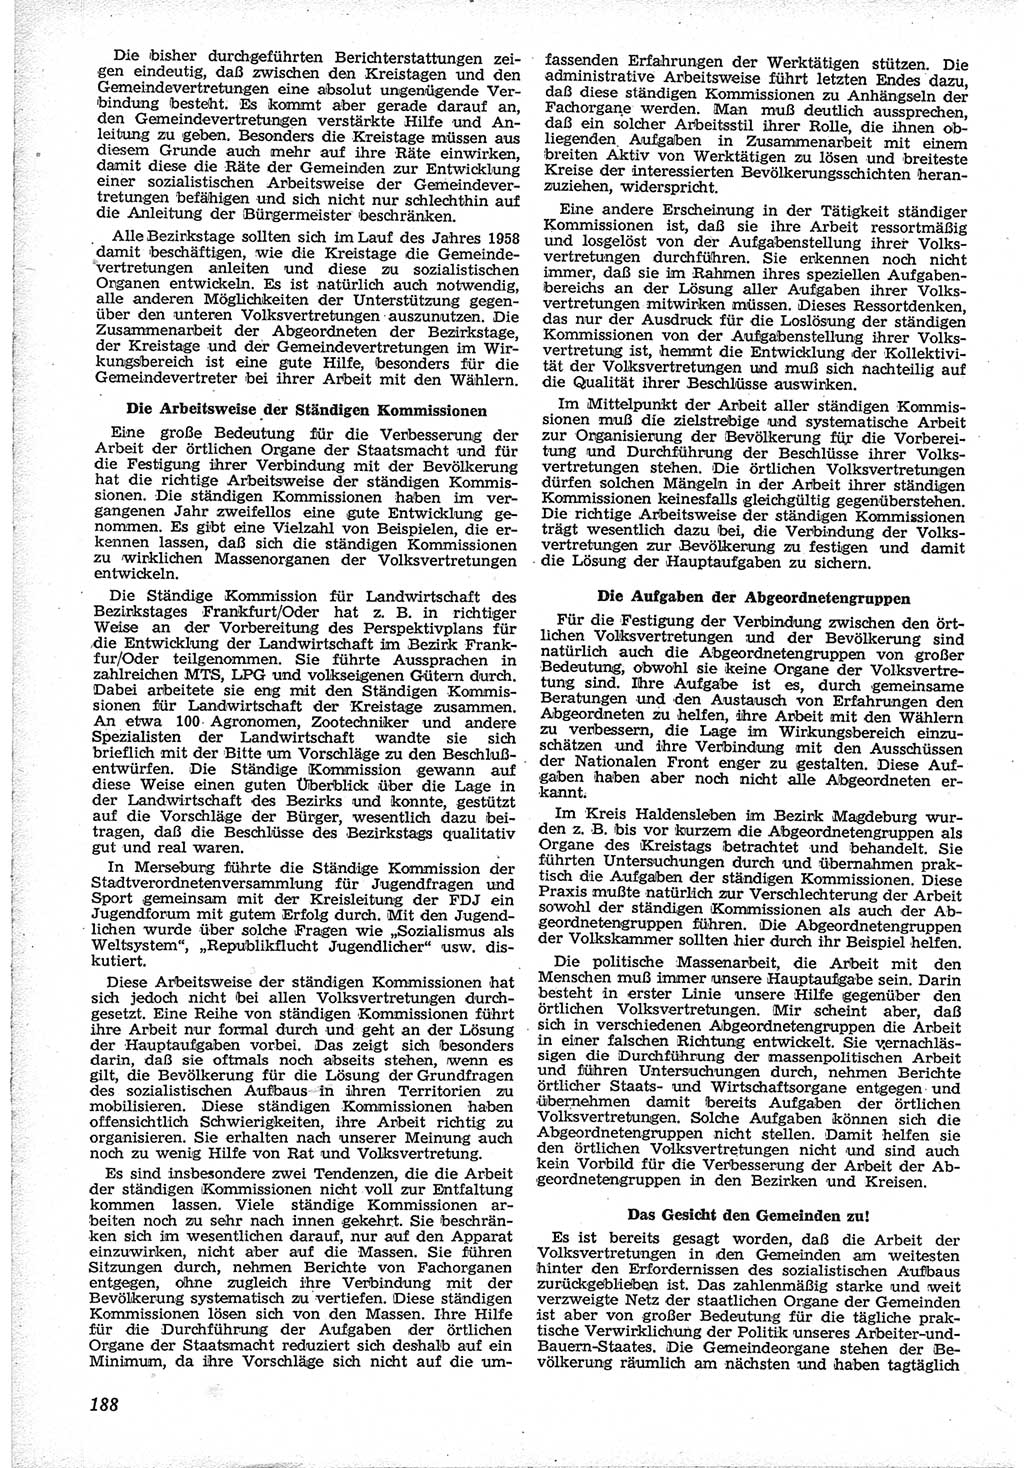 Neue Justiz (NJ), Zeitschrift für Recht und Rechtswissenschaft [Deutsche Demokratische Republik (DDR)], 12. Jahrgang 1958, Seite 188 (NJ DDR 1958, S. 188)